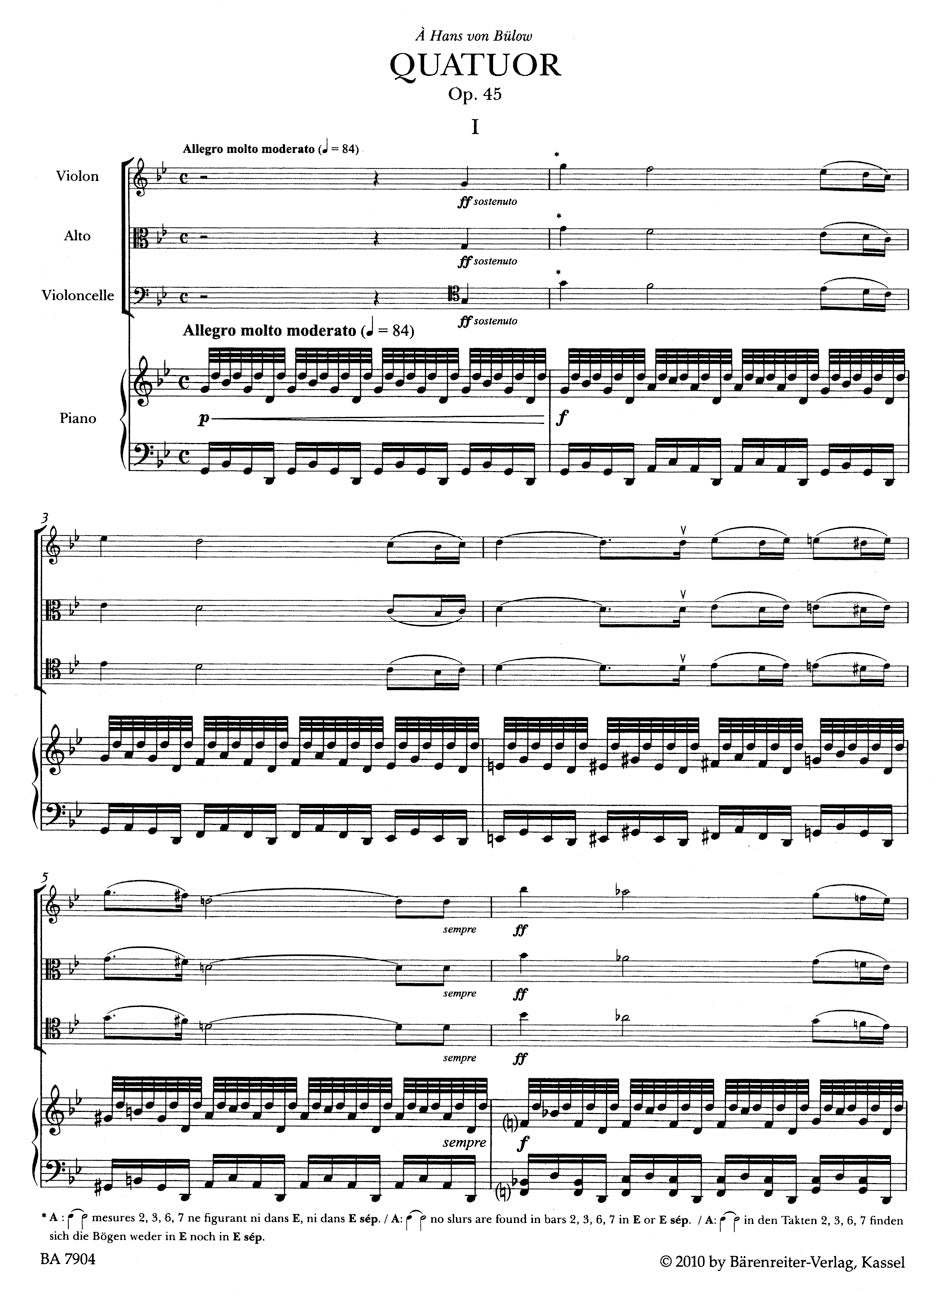 Faure Piano Quartet in g minor Opus 45